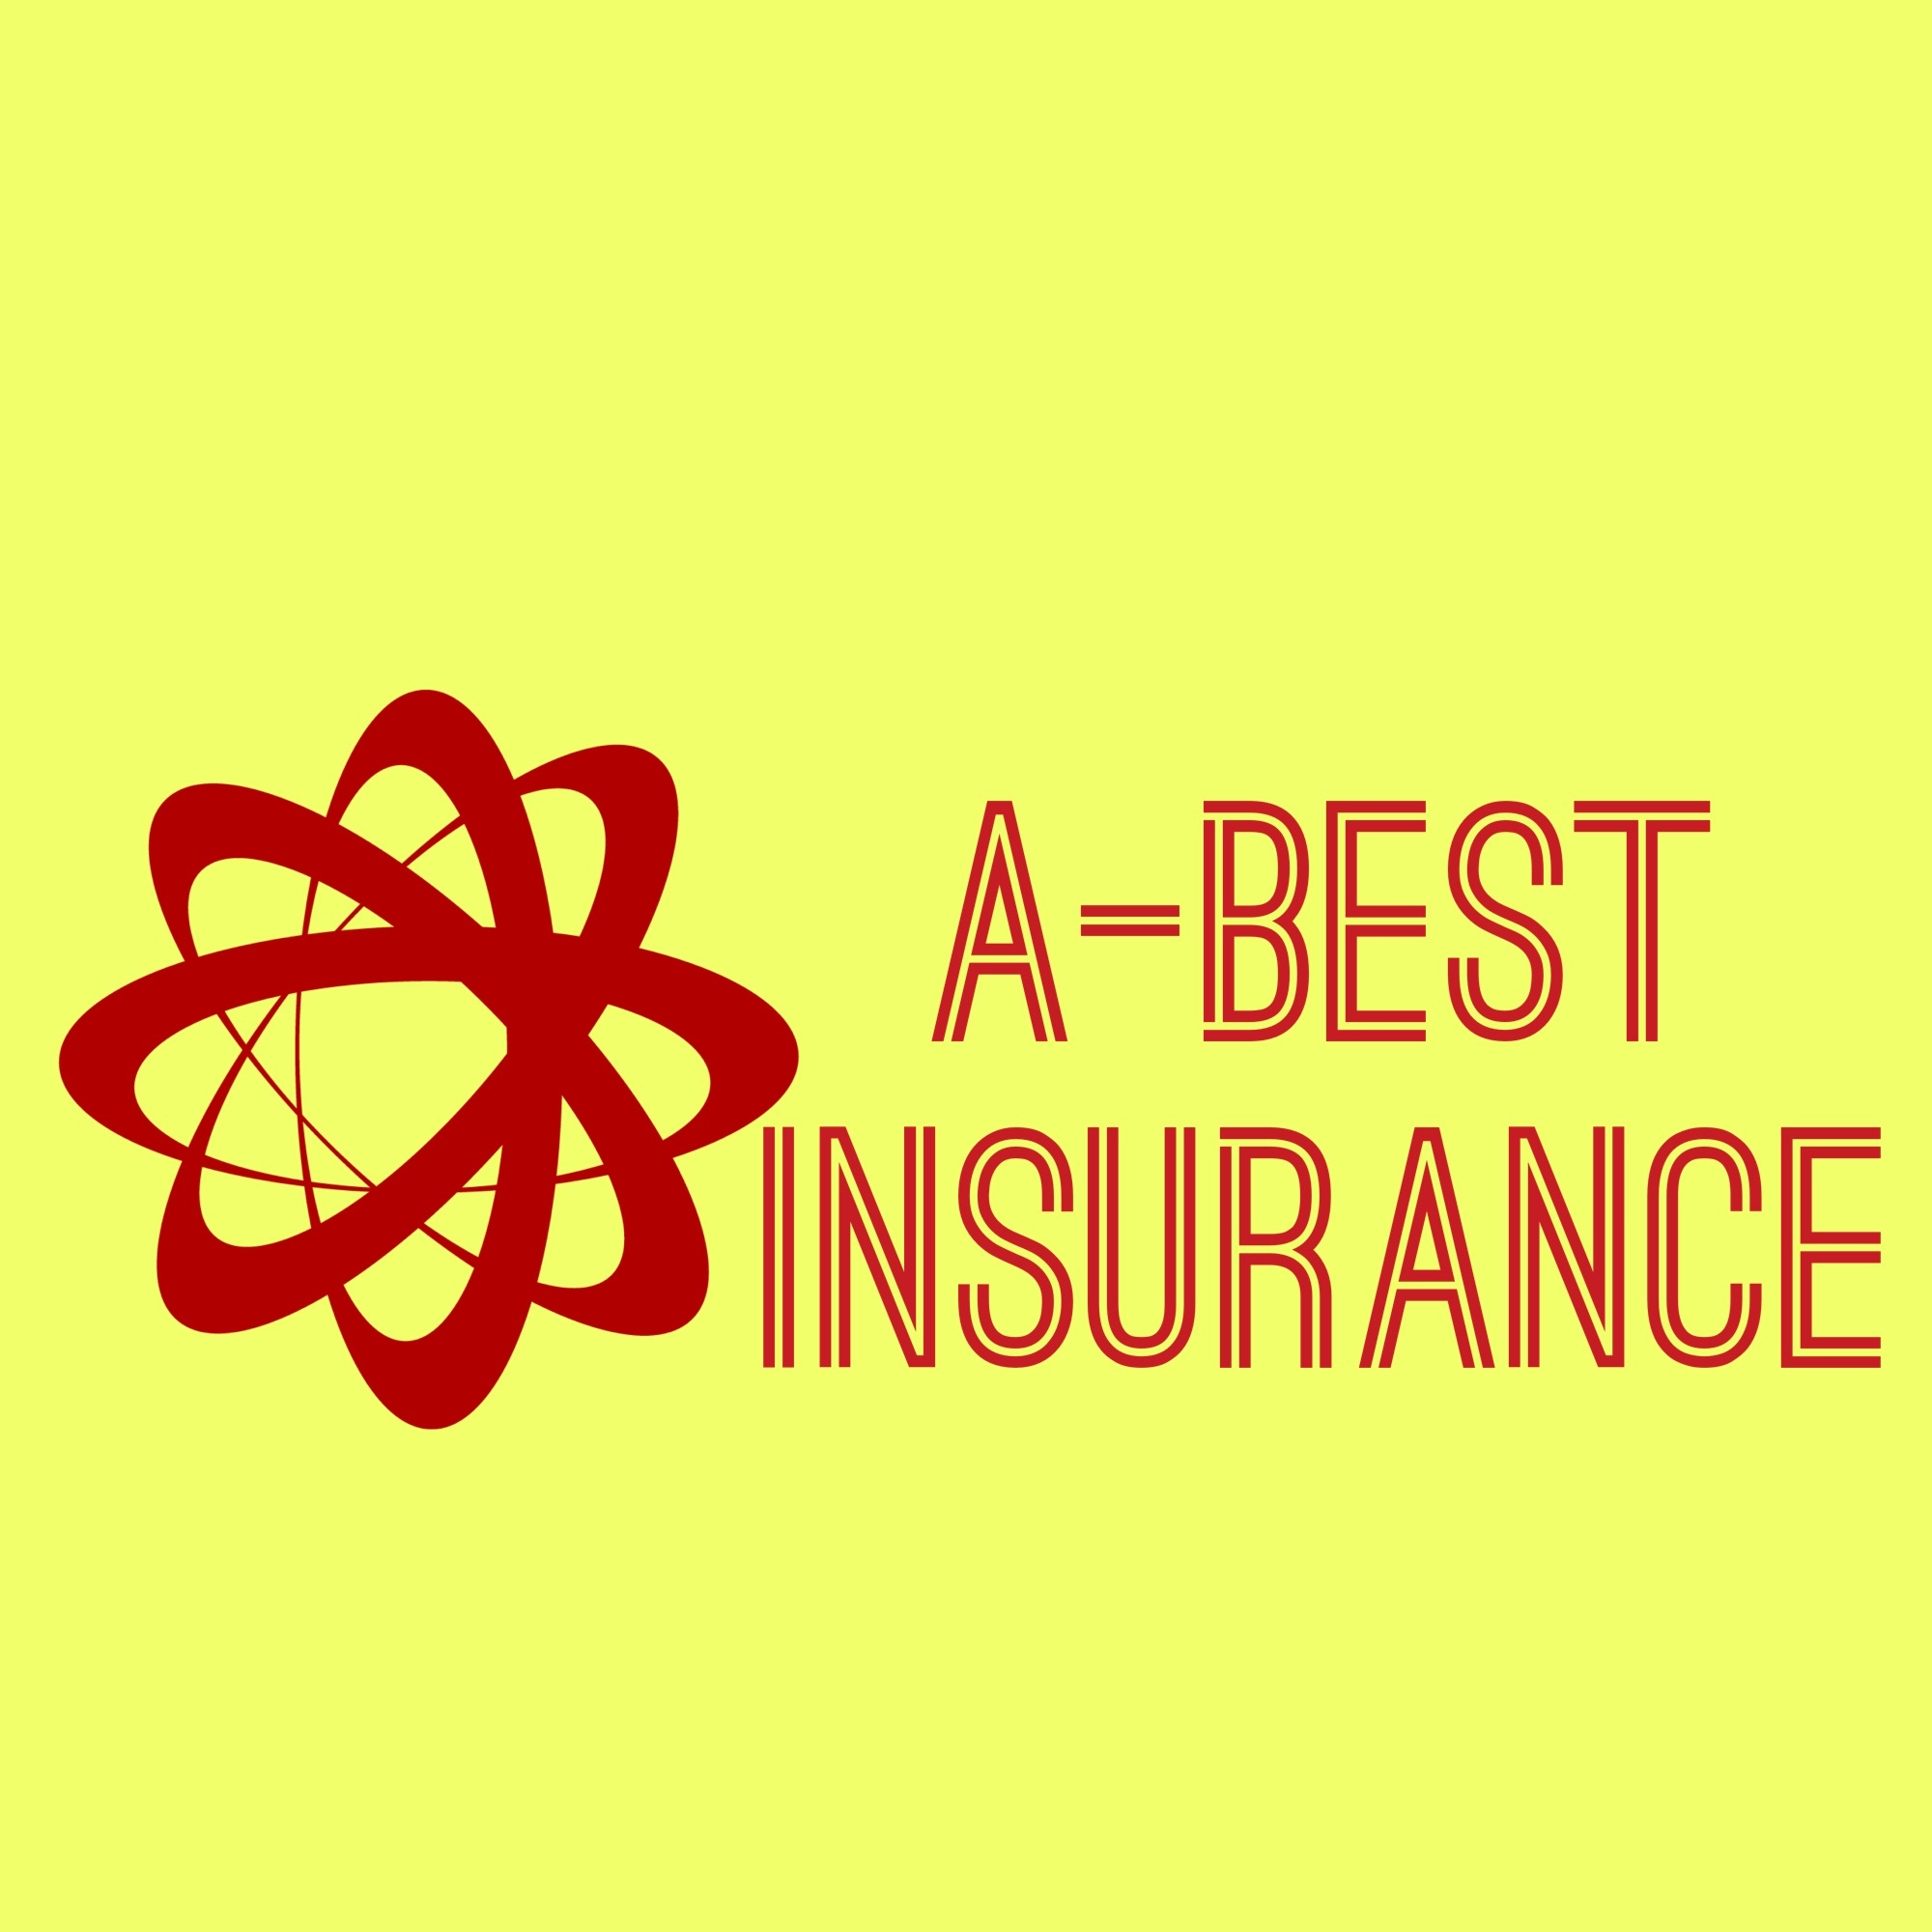 A Best Insurance Logo